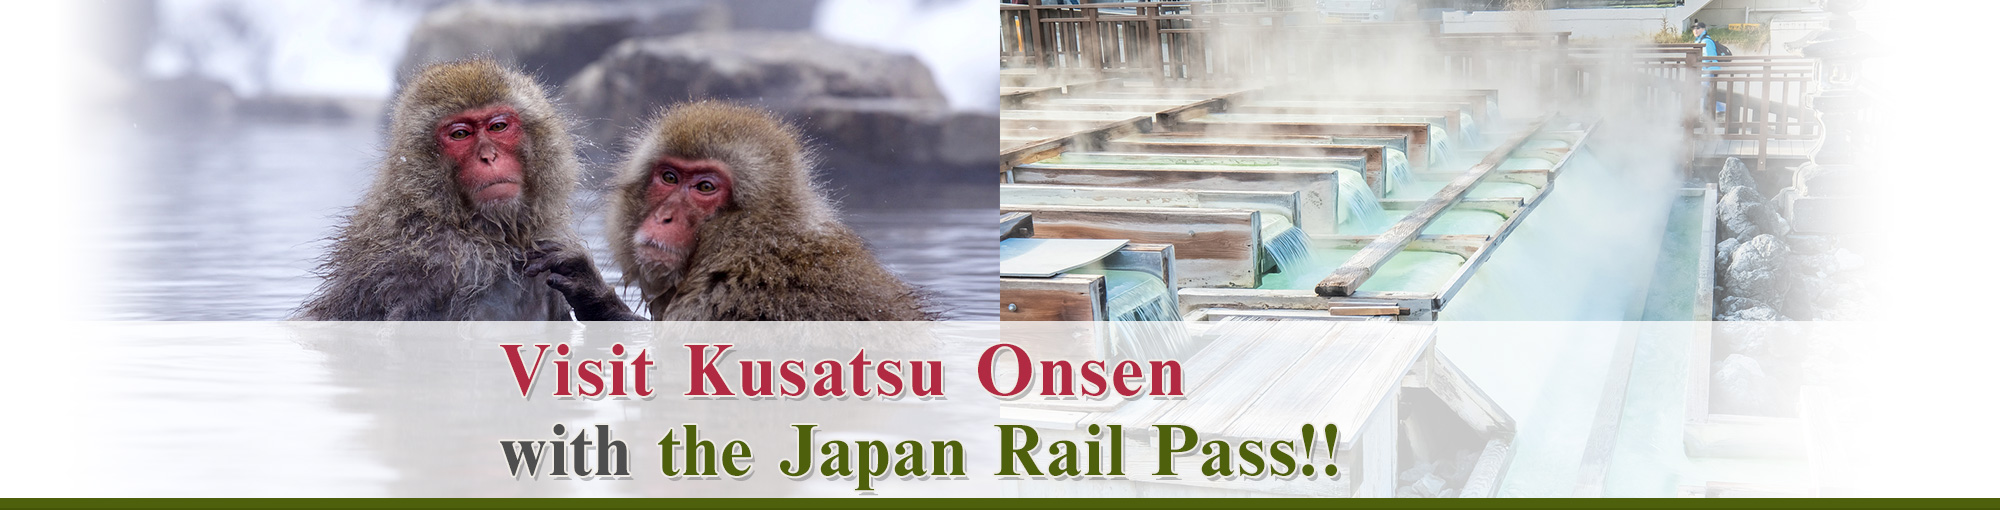 Visit Kusatsu Onsen with the Japan Rail Pass!!